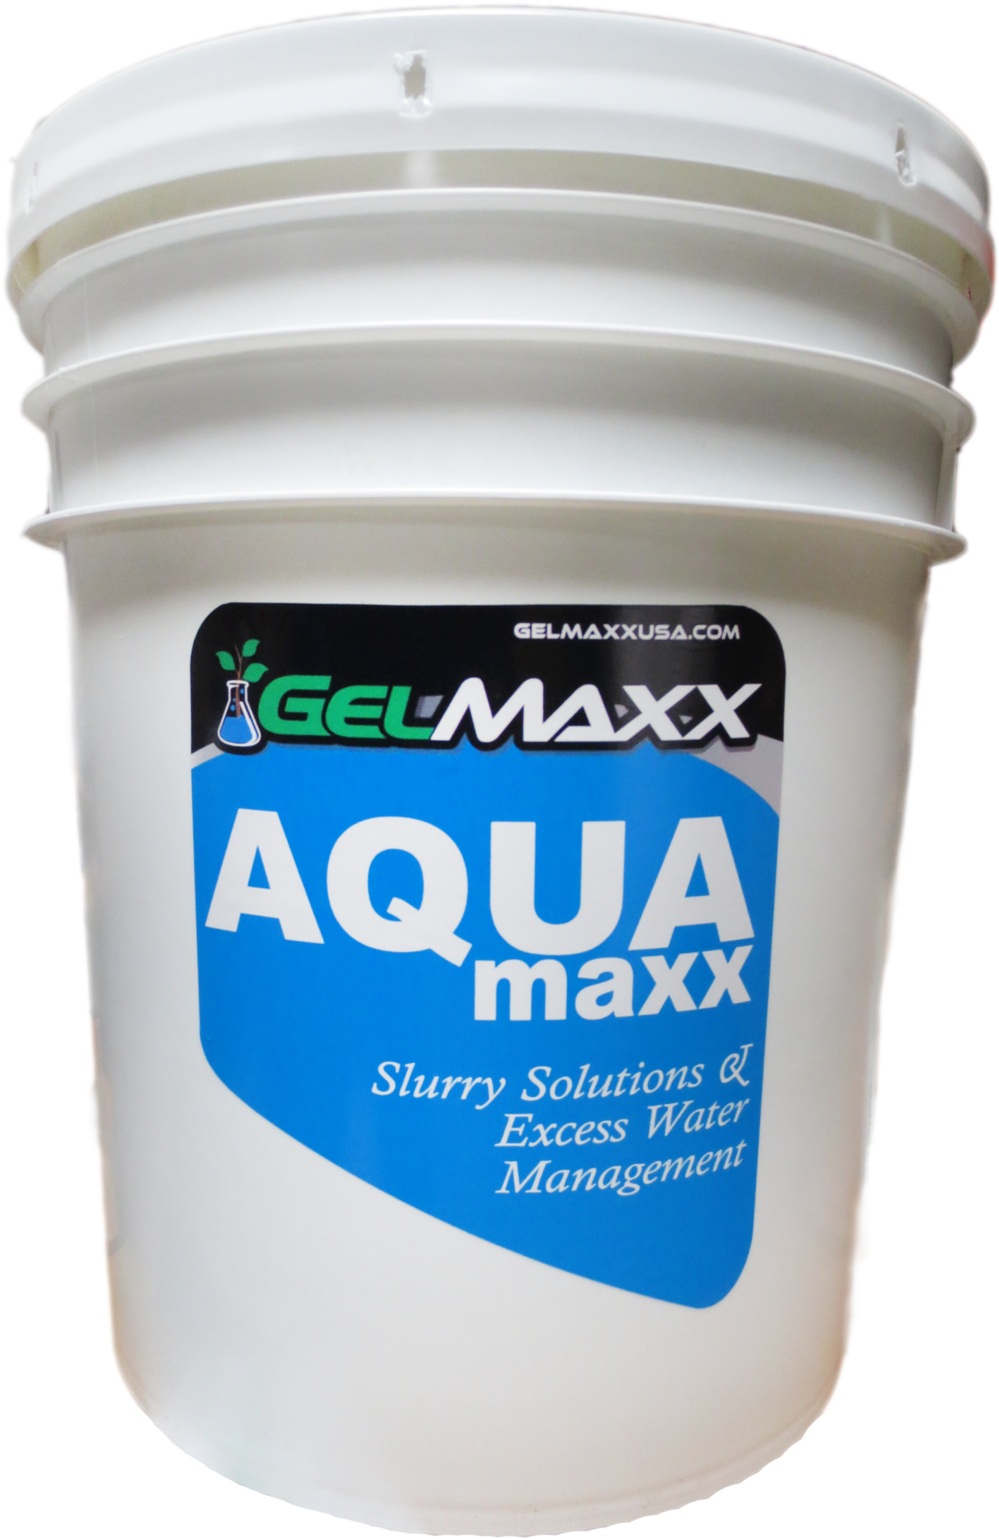 Gelmaxx Aqua Maxx Container PNG image